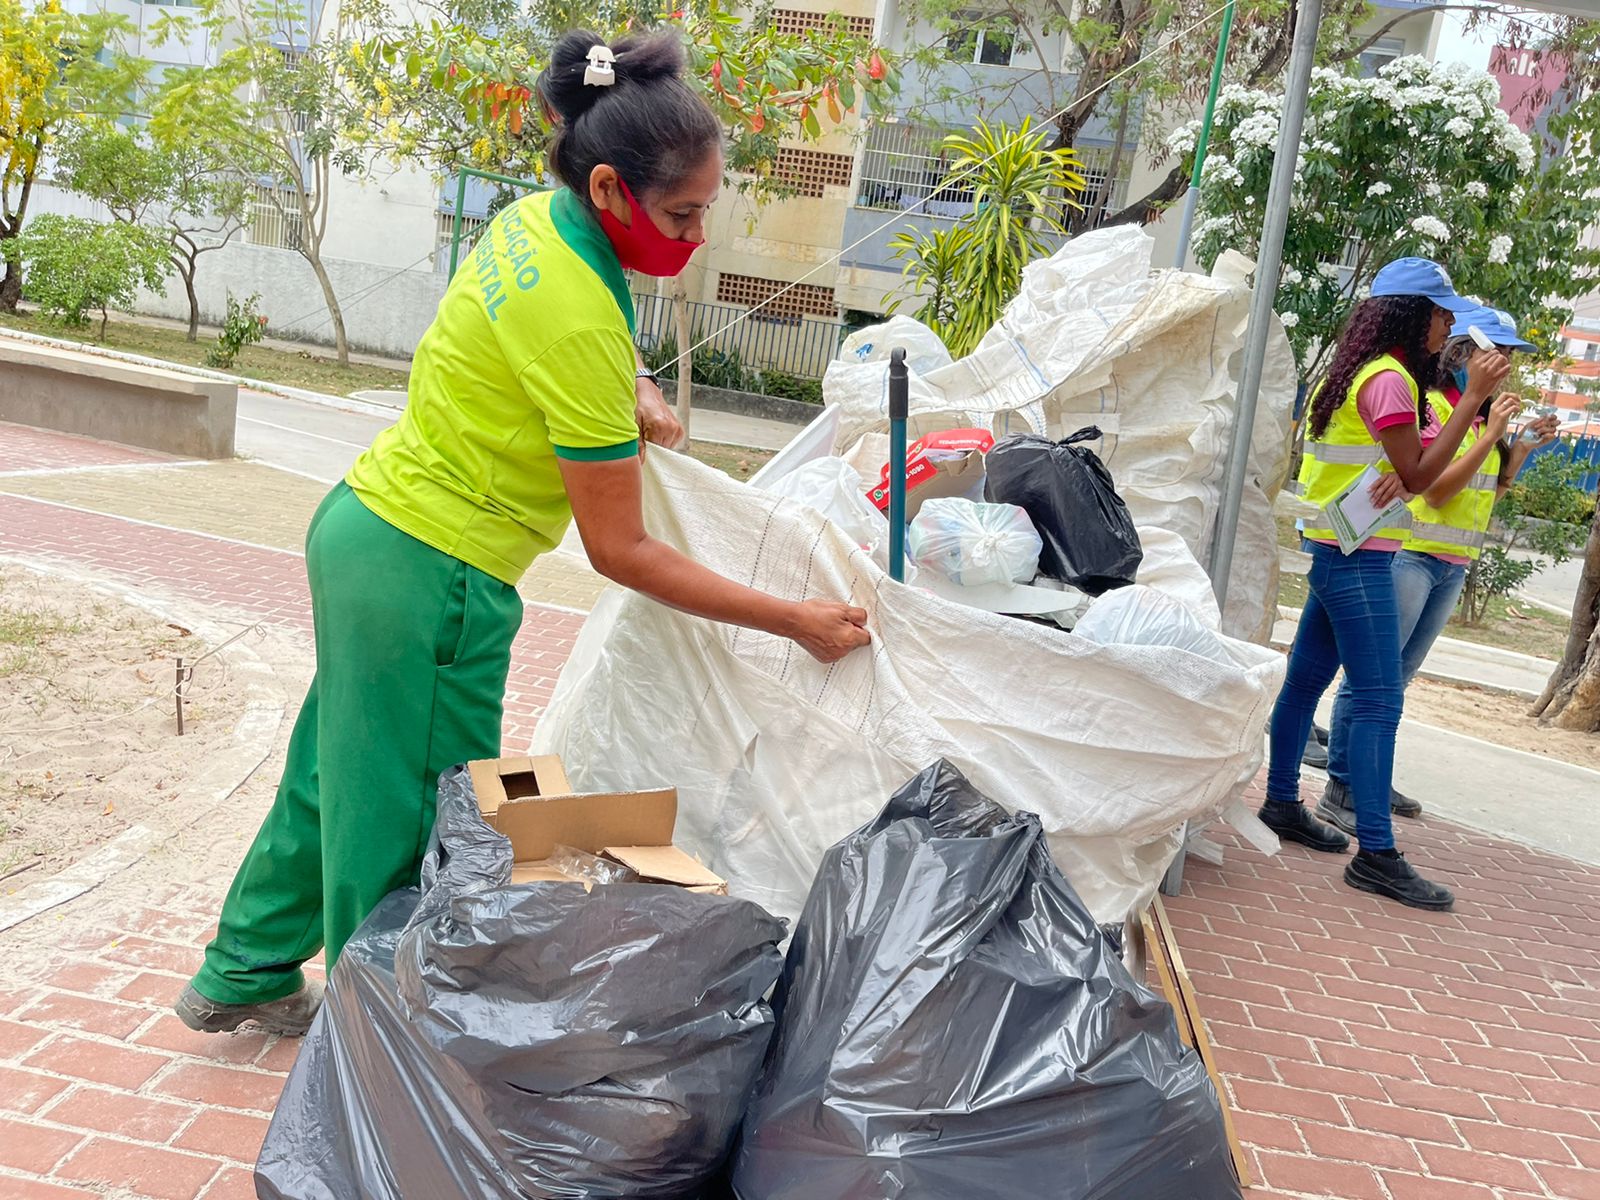 Recicla Maceió recolheu mais de 350 kg de recicláveis na Jatiúca. Foto: Ascom Sudes